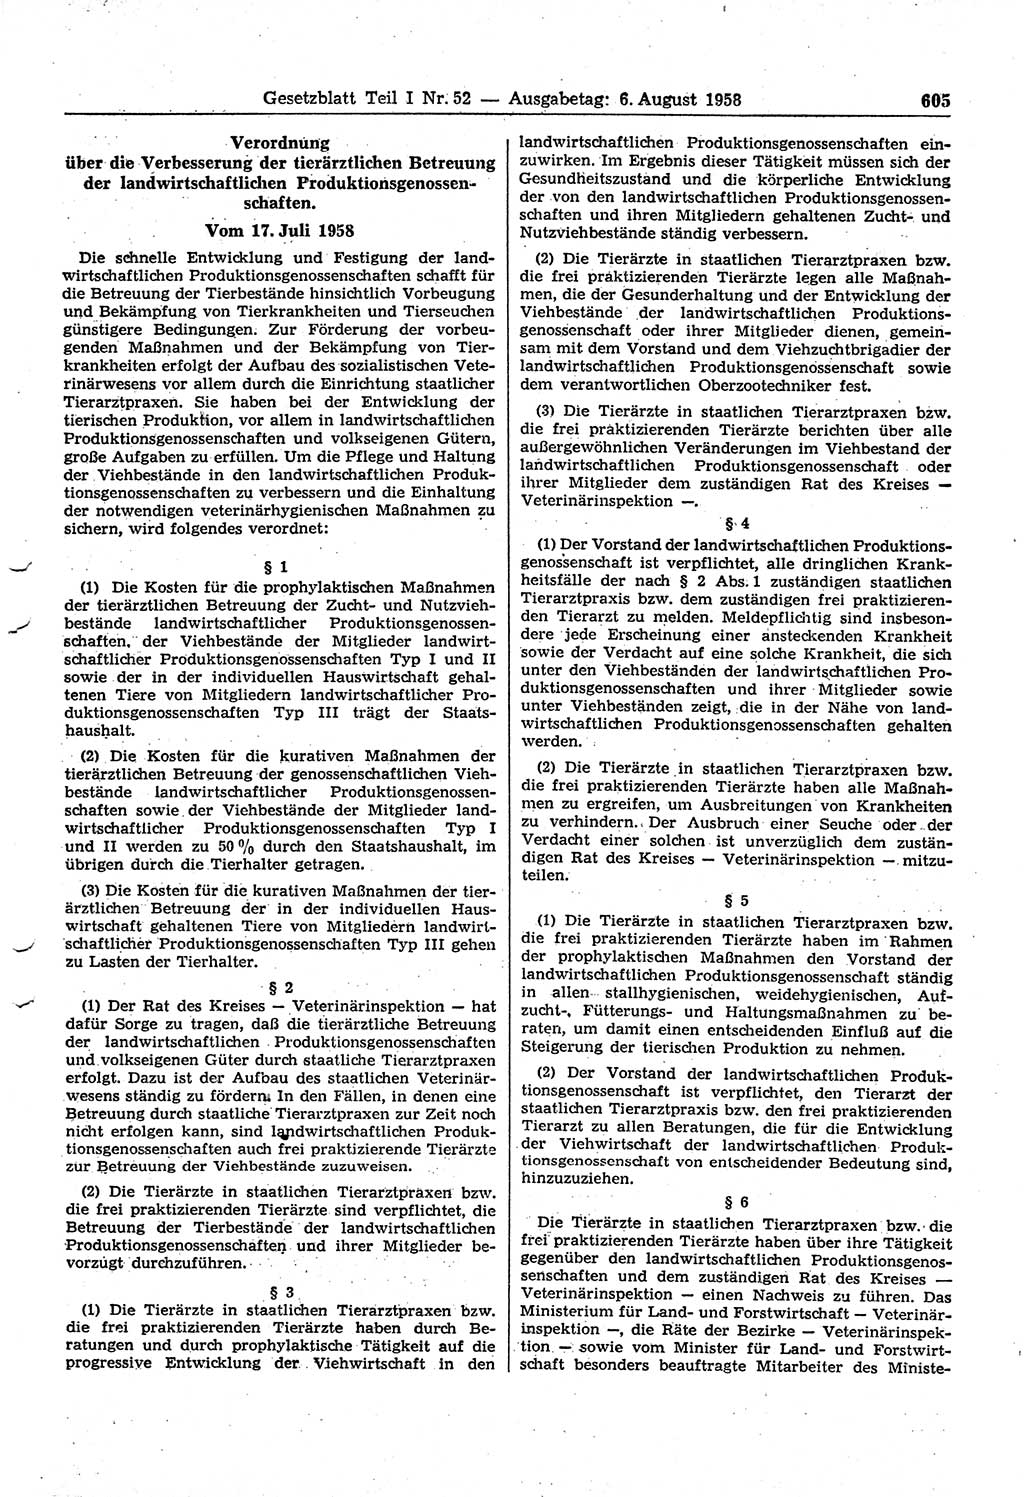 Gesetzblatt (GBl.) der Deutschen Demokratischen Republik (DDR) Teil Ⅰ 1958, Seite 605 (GBl. DDR Ⅰ 1958, S. 605)